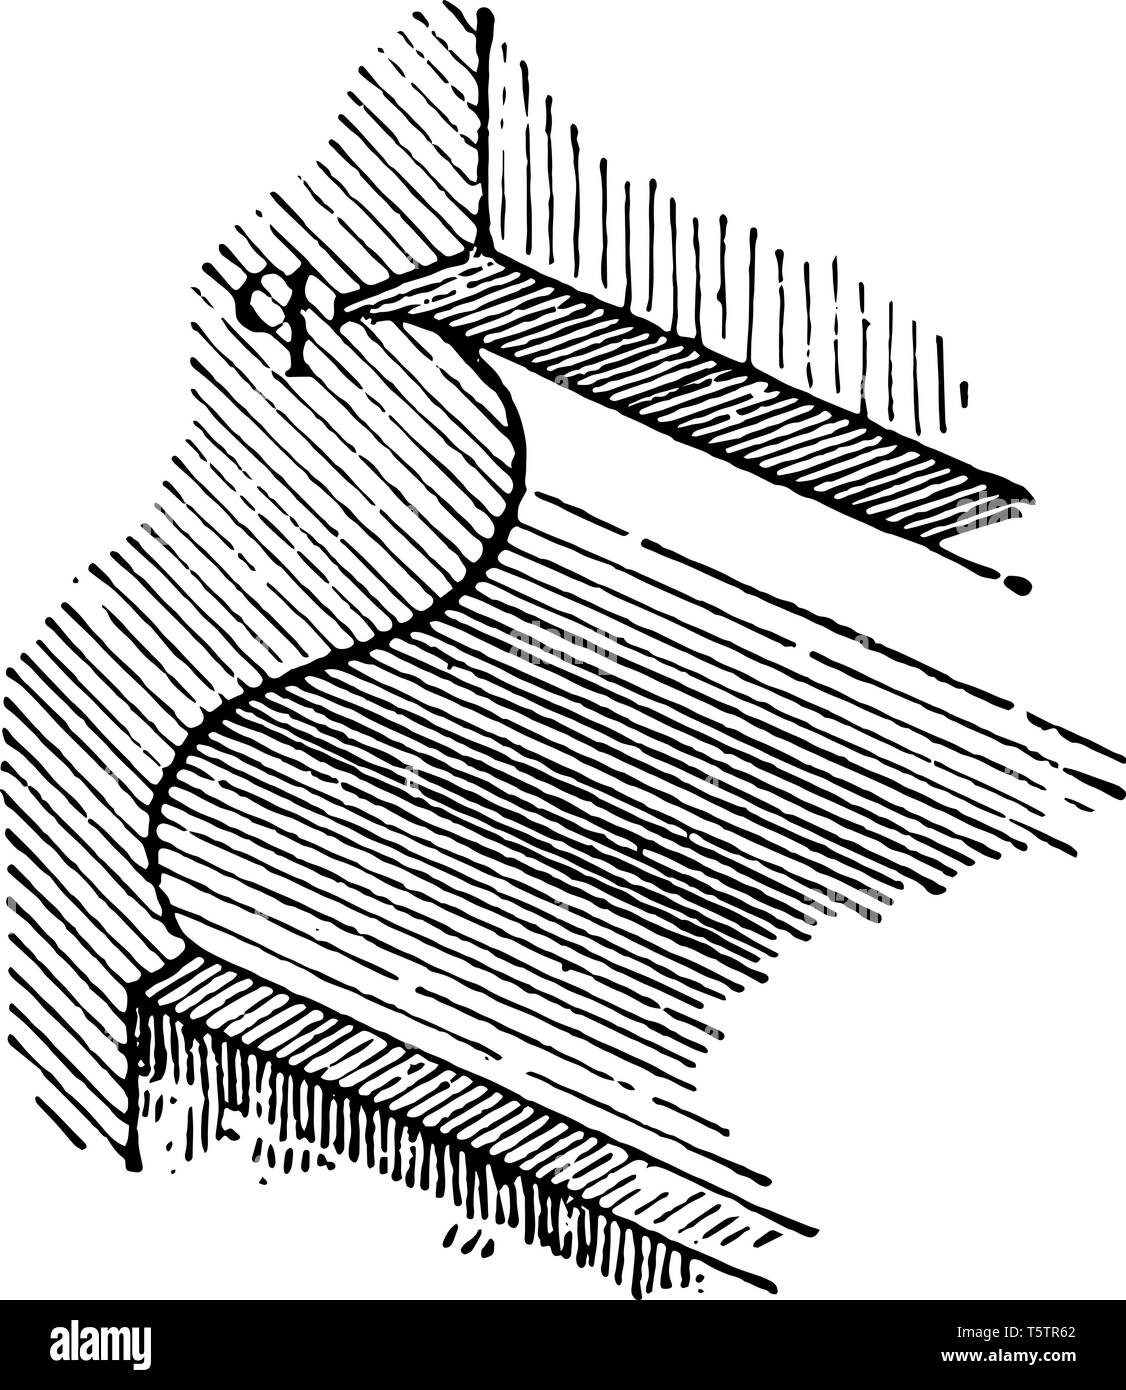 Quirk stampaggio avente una scanalatura piccola proporzione di finitura per la sua larghezza vintage disegno della linea di incisione o illustrazione. Illustrazione Vettoriale